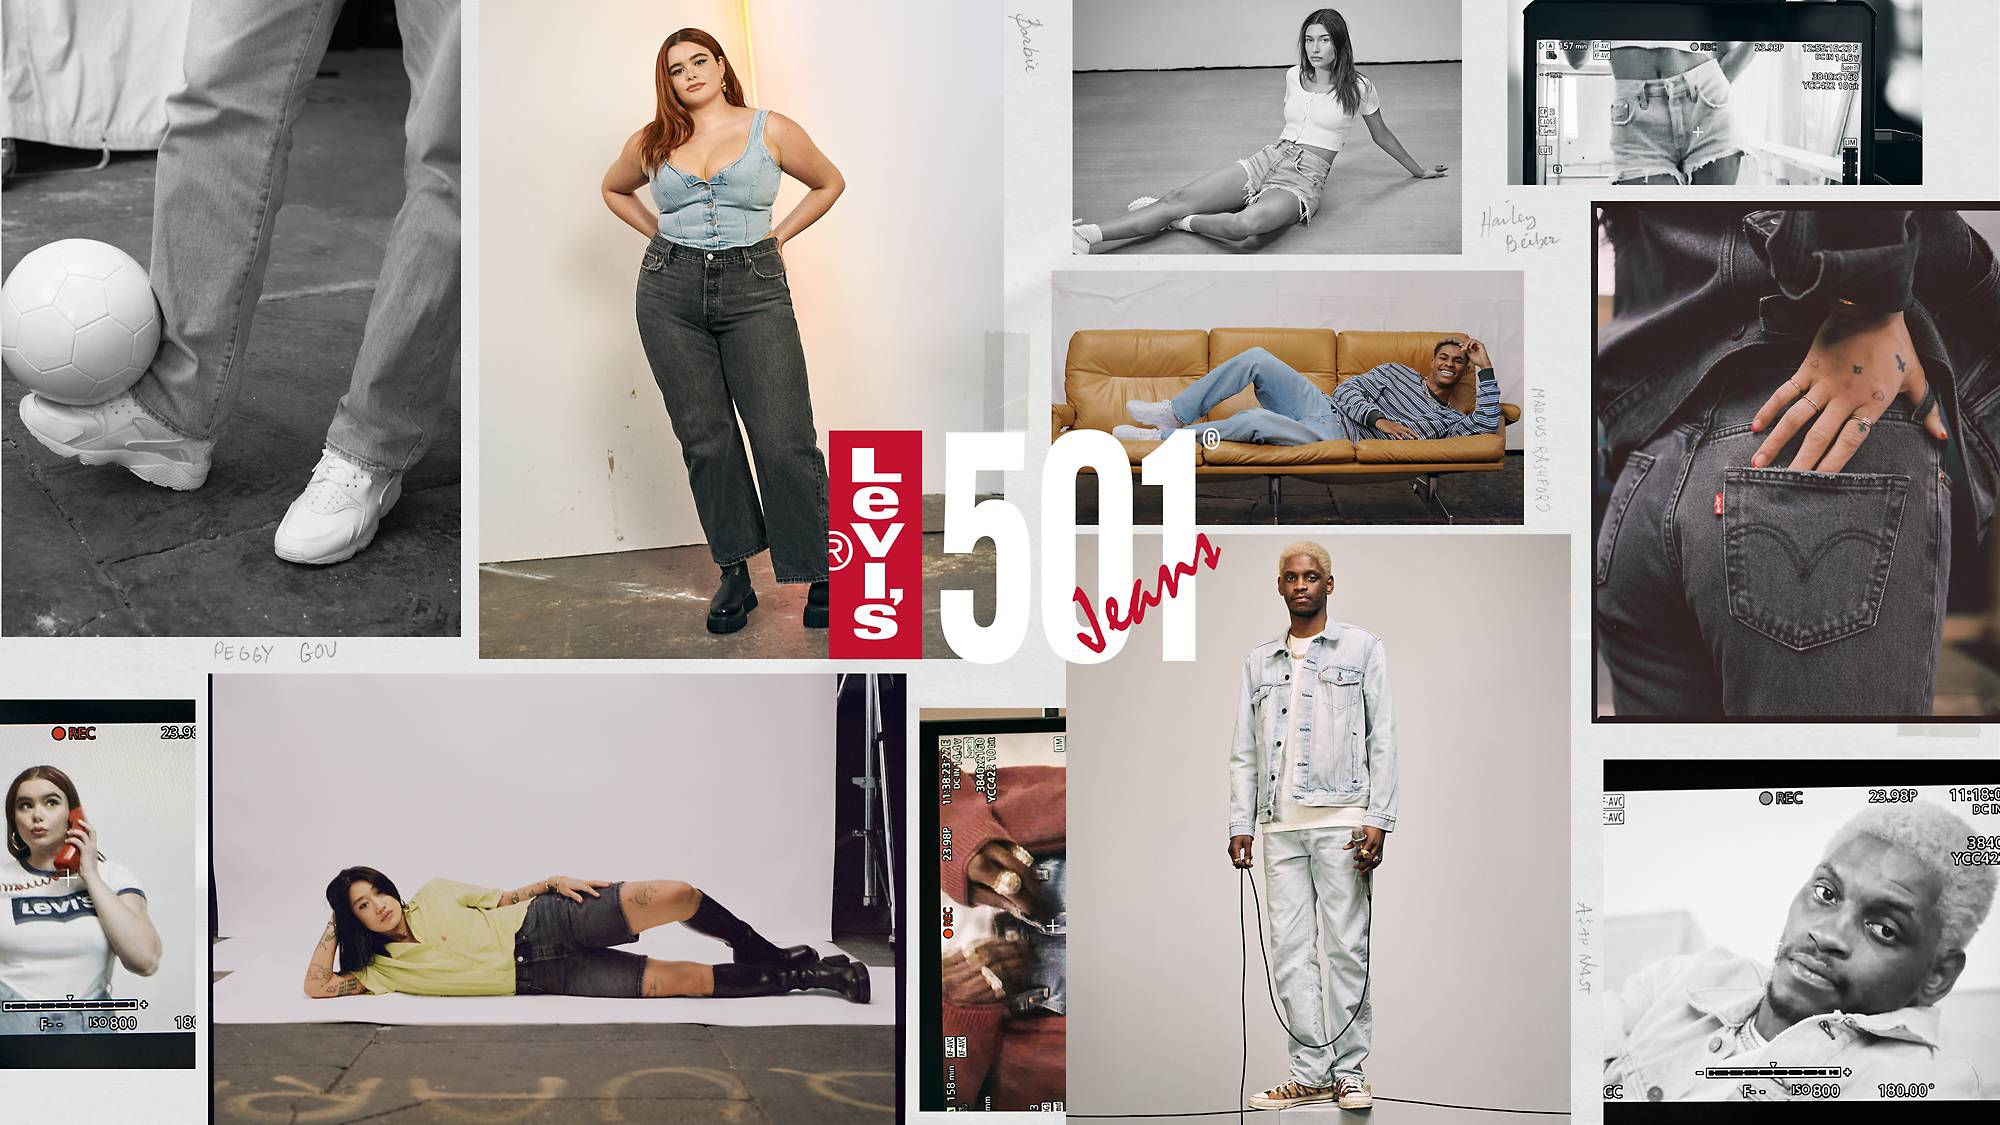 11 Best Louis vuitton jeans ideas